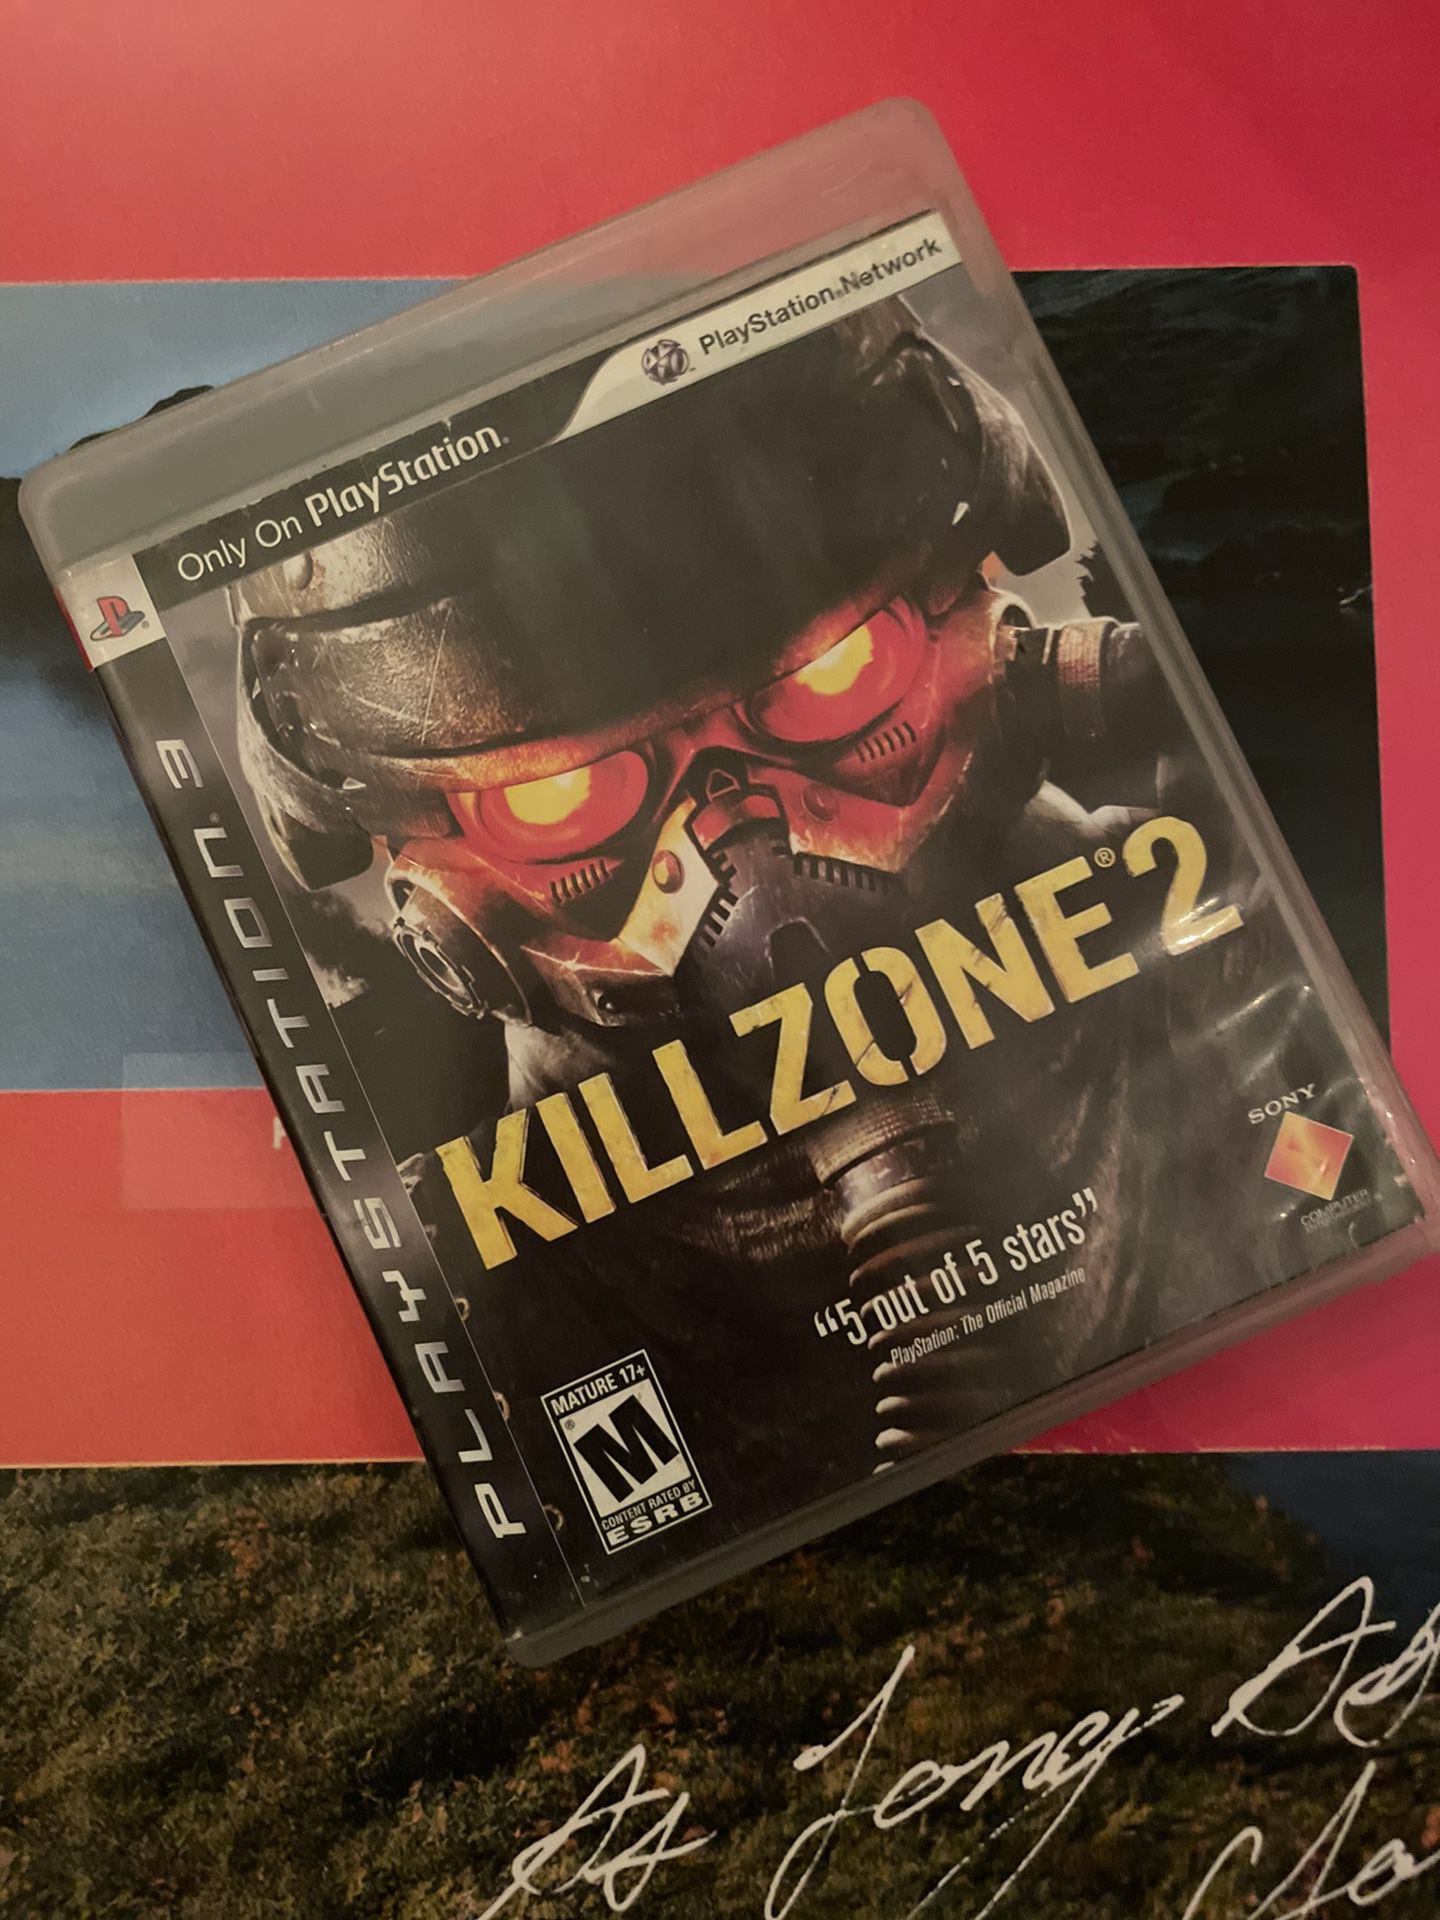 Kill Zone 2